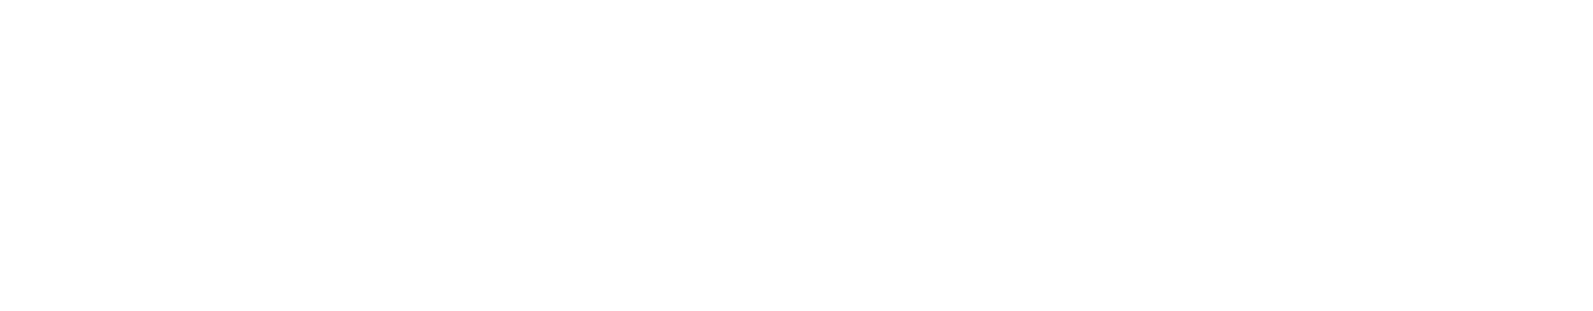 Precipio logo large for dark backgrounds (transparent PNG)